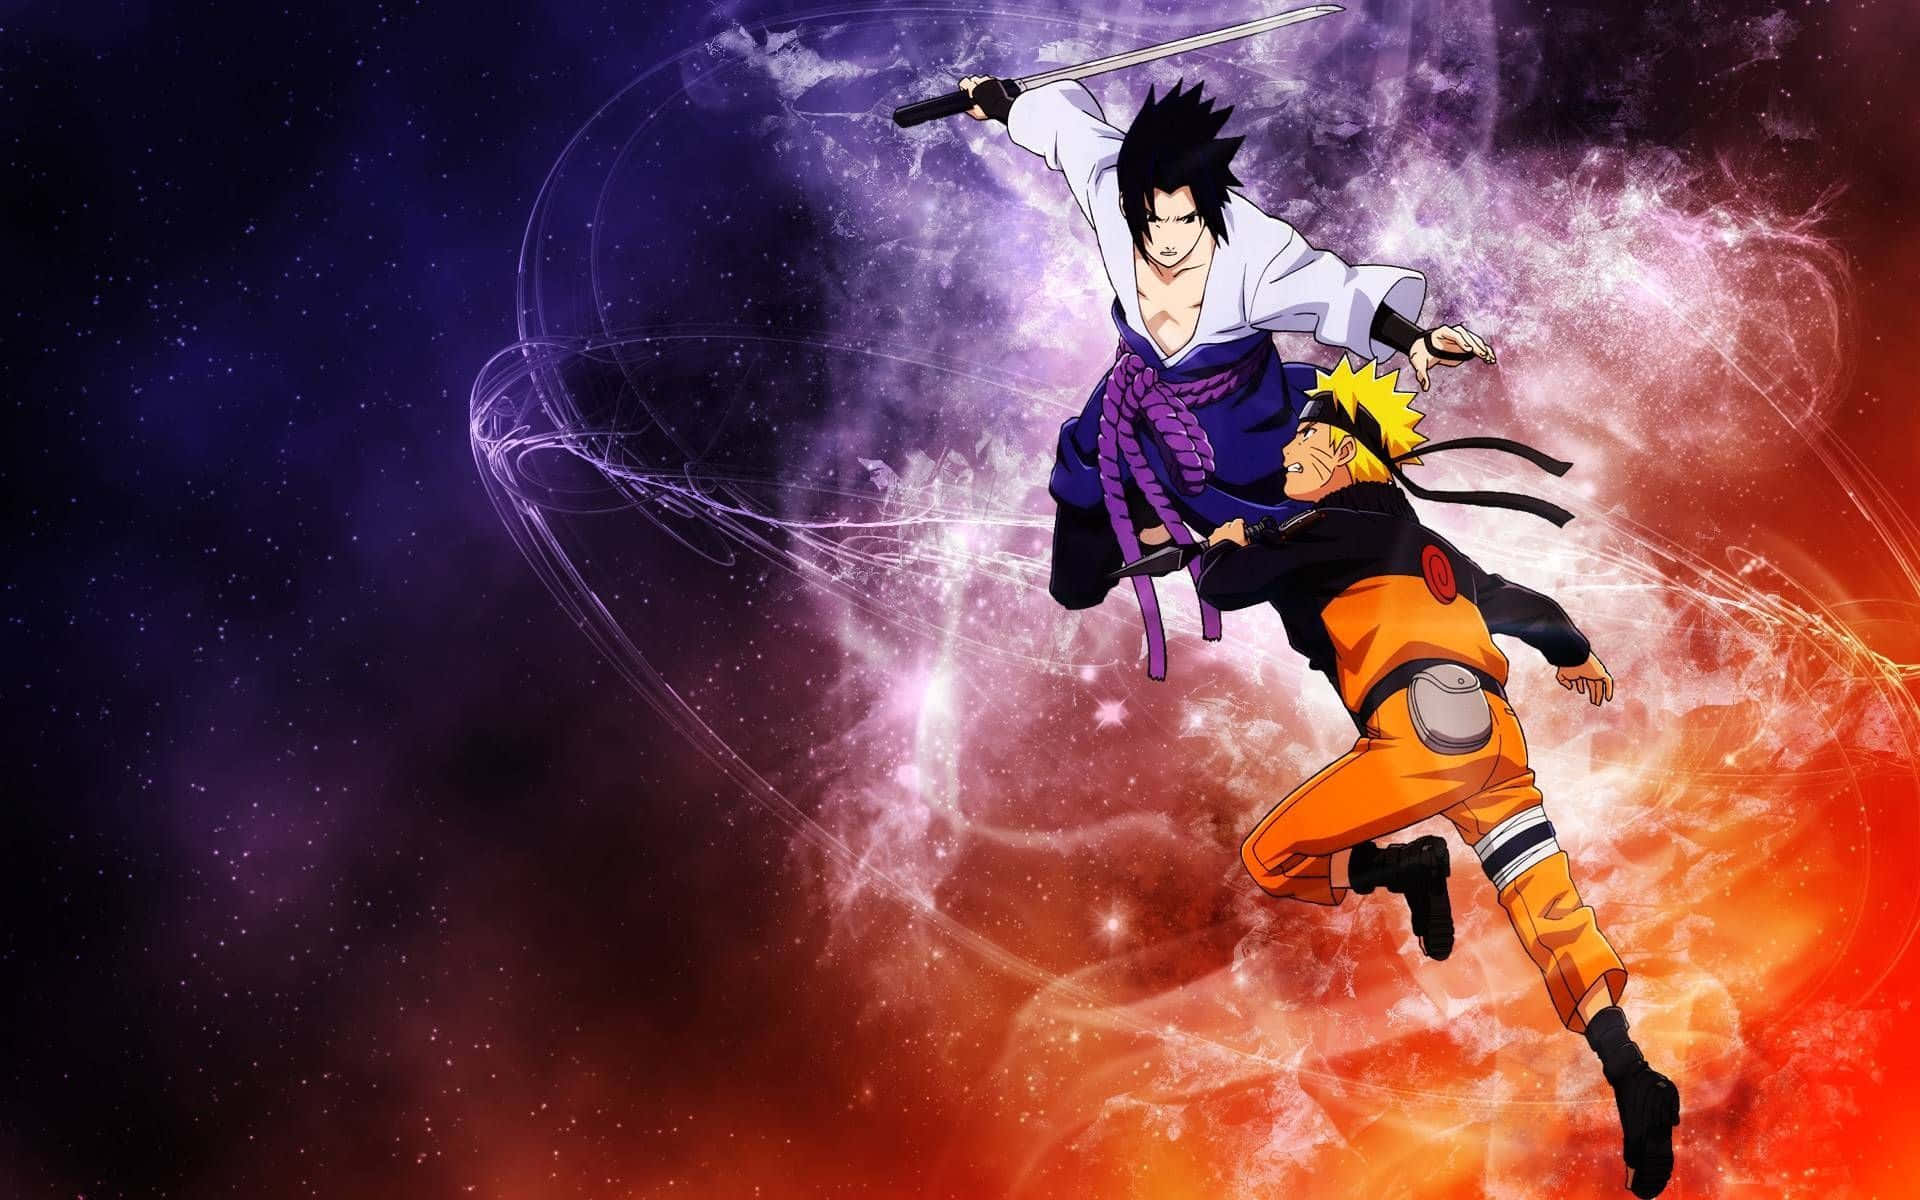 Slipp kraften fra Ninjaen med Naruto på PlayStation 4. Wallpaper